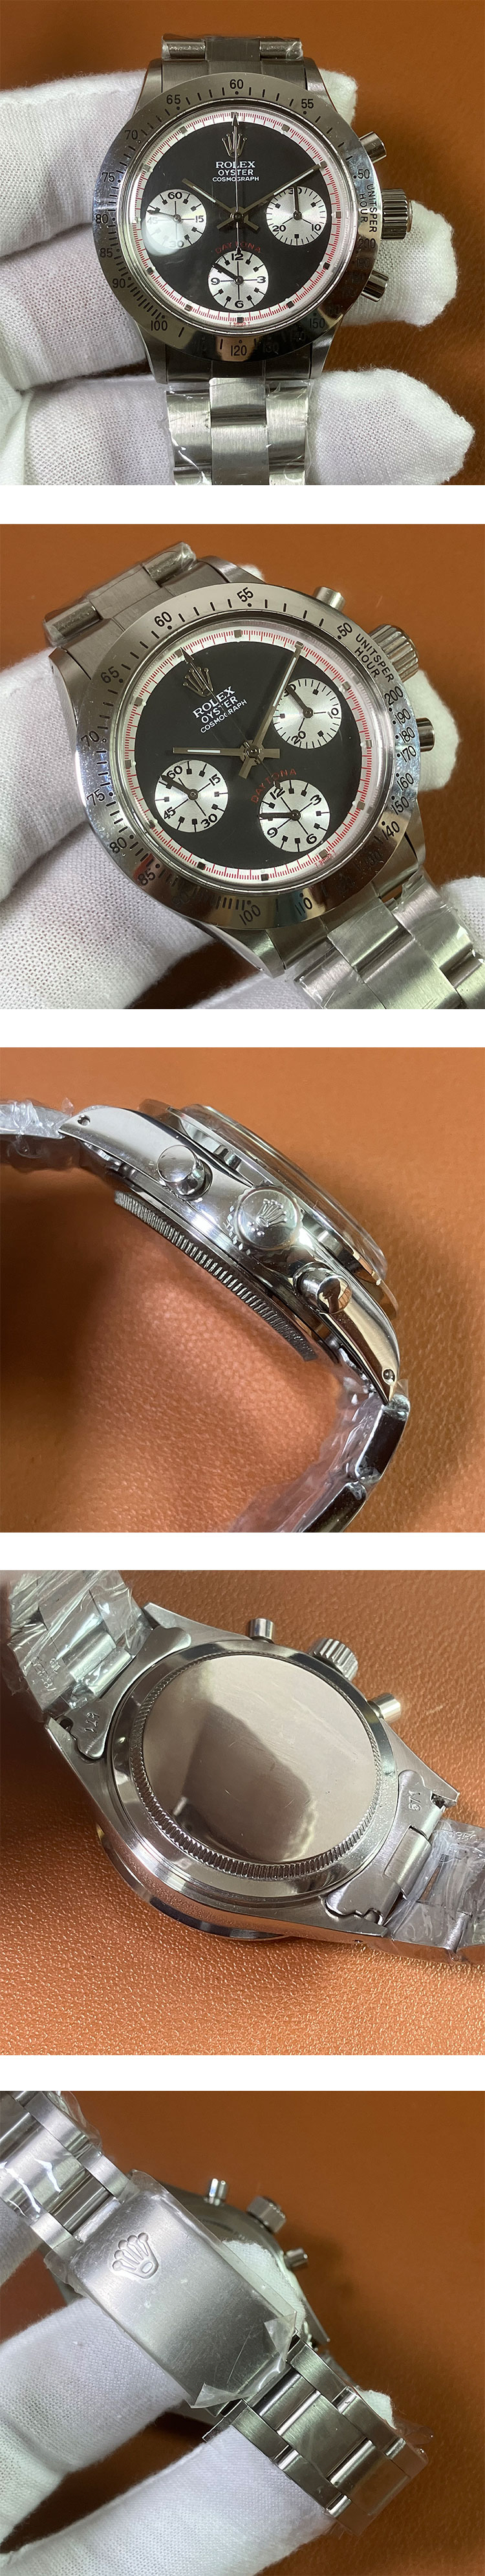 ロレックス デイトナ 6239 ポールニューマン エキゾチックダイヤル 手巻き（大人気スーパーコピー腕時計)